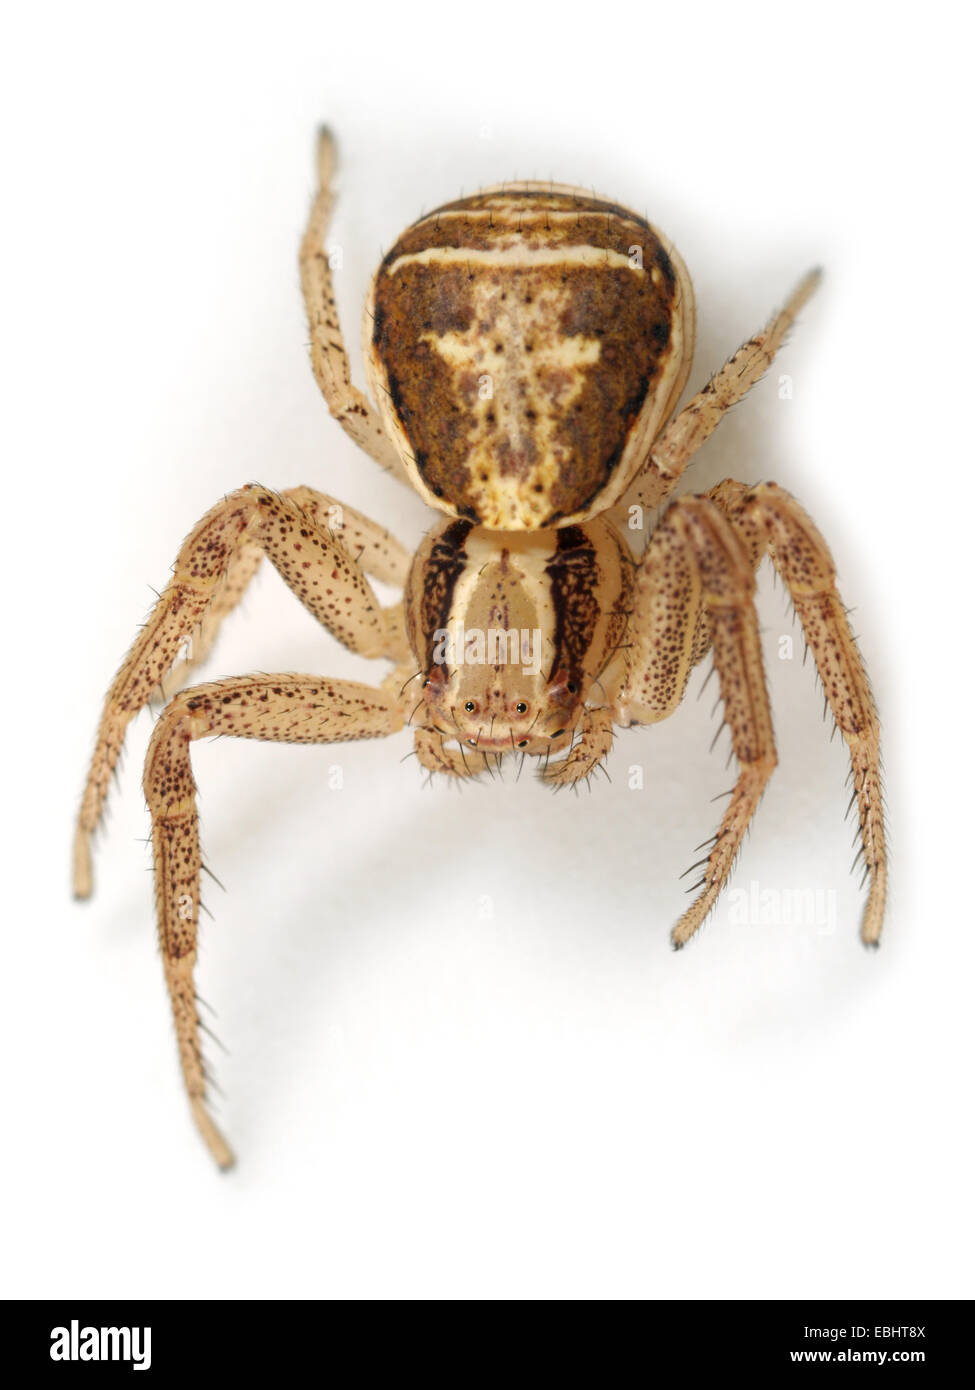 (Xysticus ulmi) Femelle Xysticus ulmi araignée sur fond blanc. Famille Thomisidae, araignées-crabes. Banque D'Images